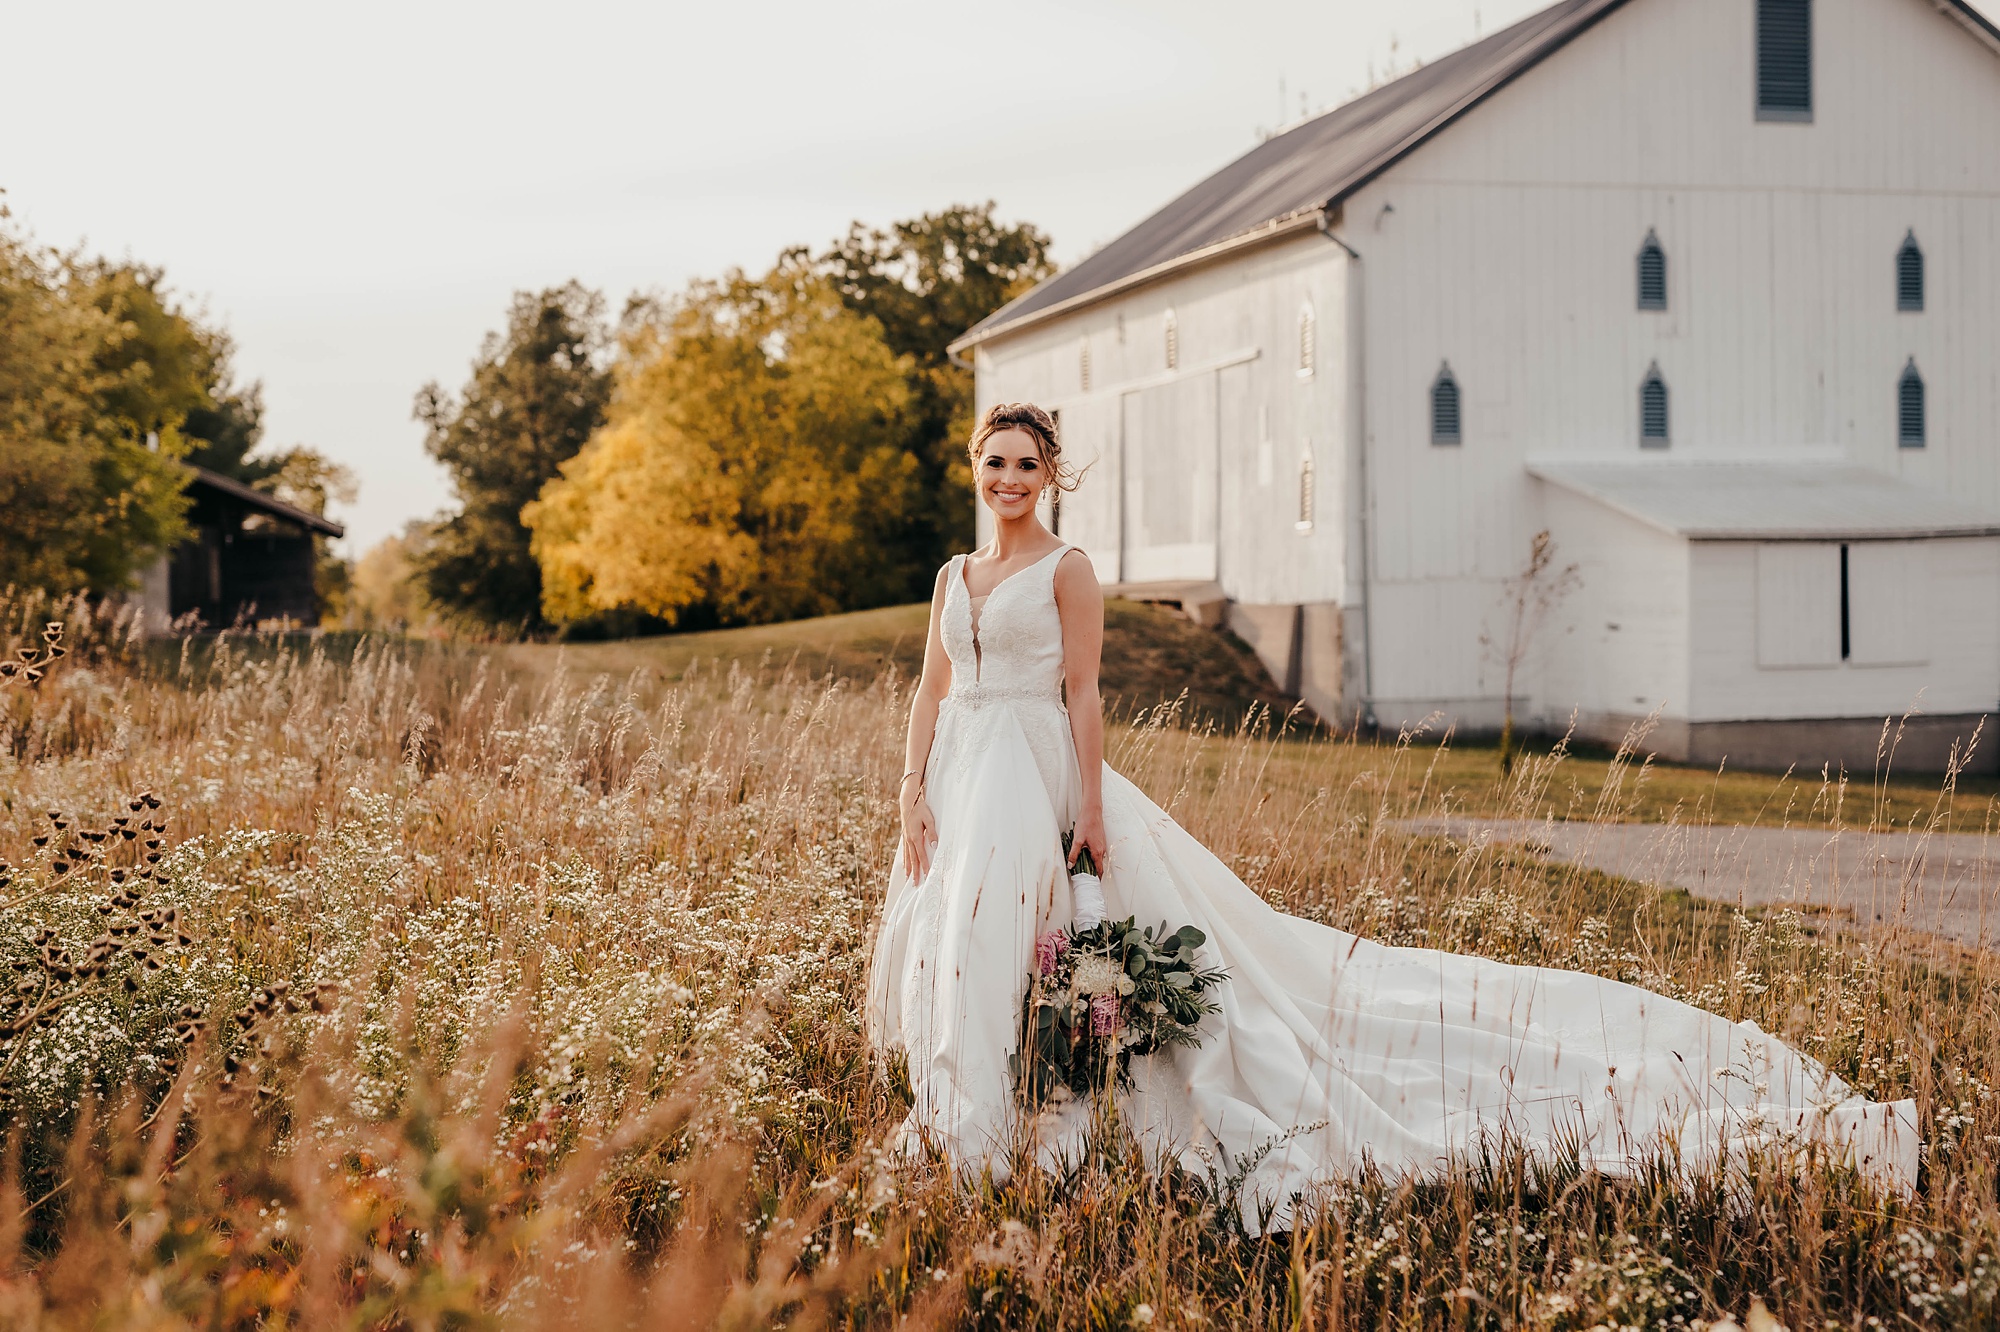 elegant fall bridal portraits in field by barn